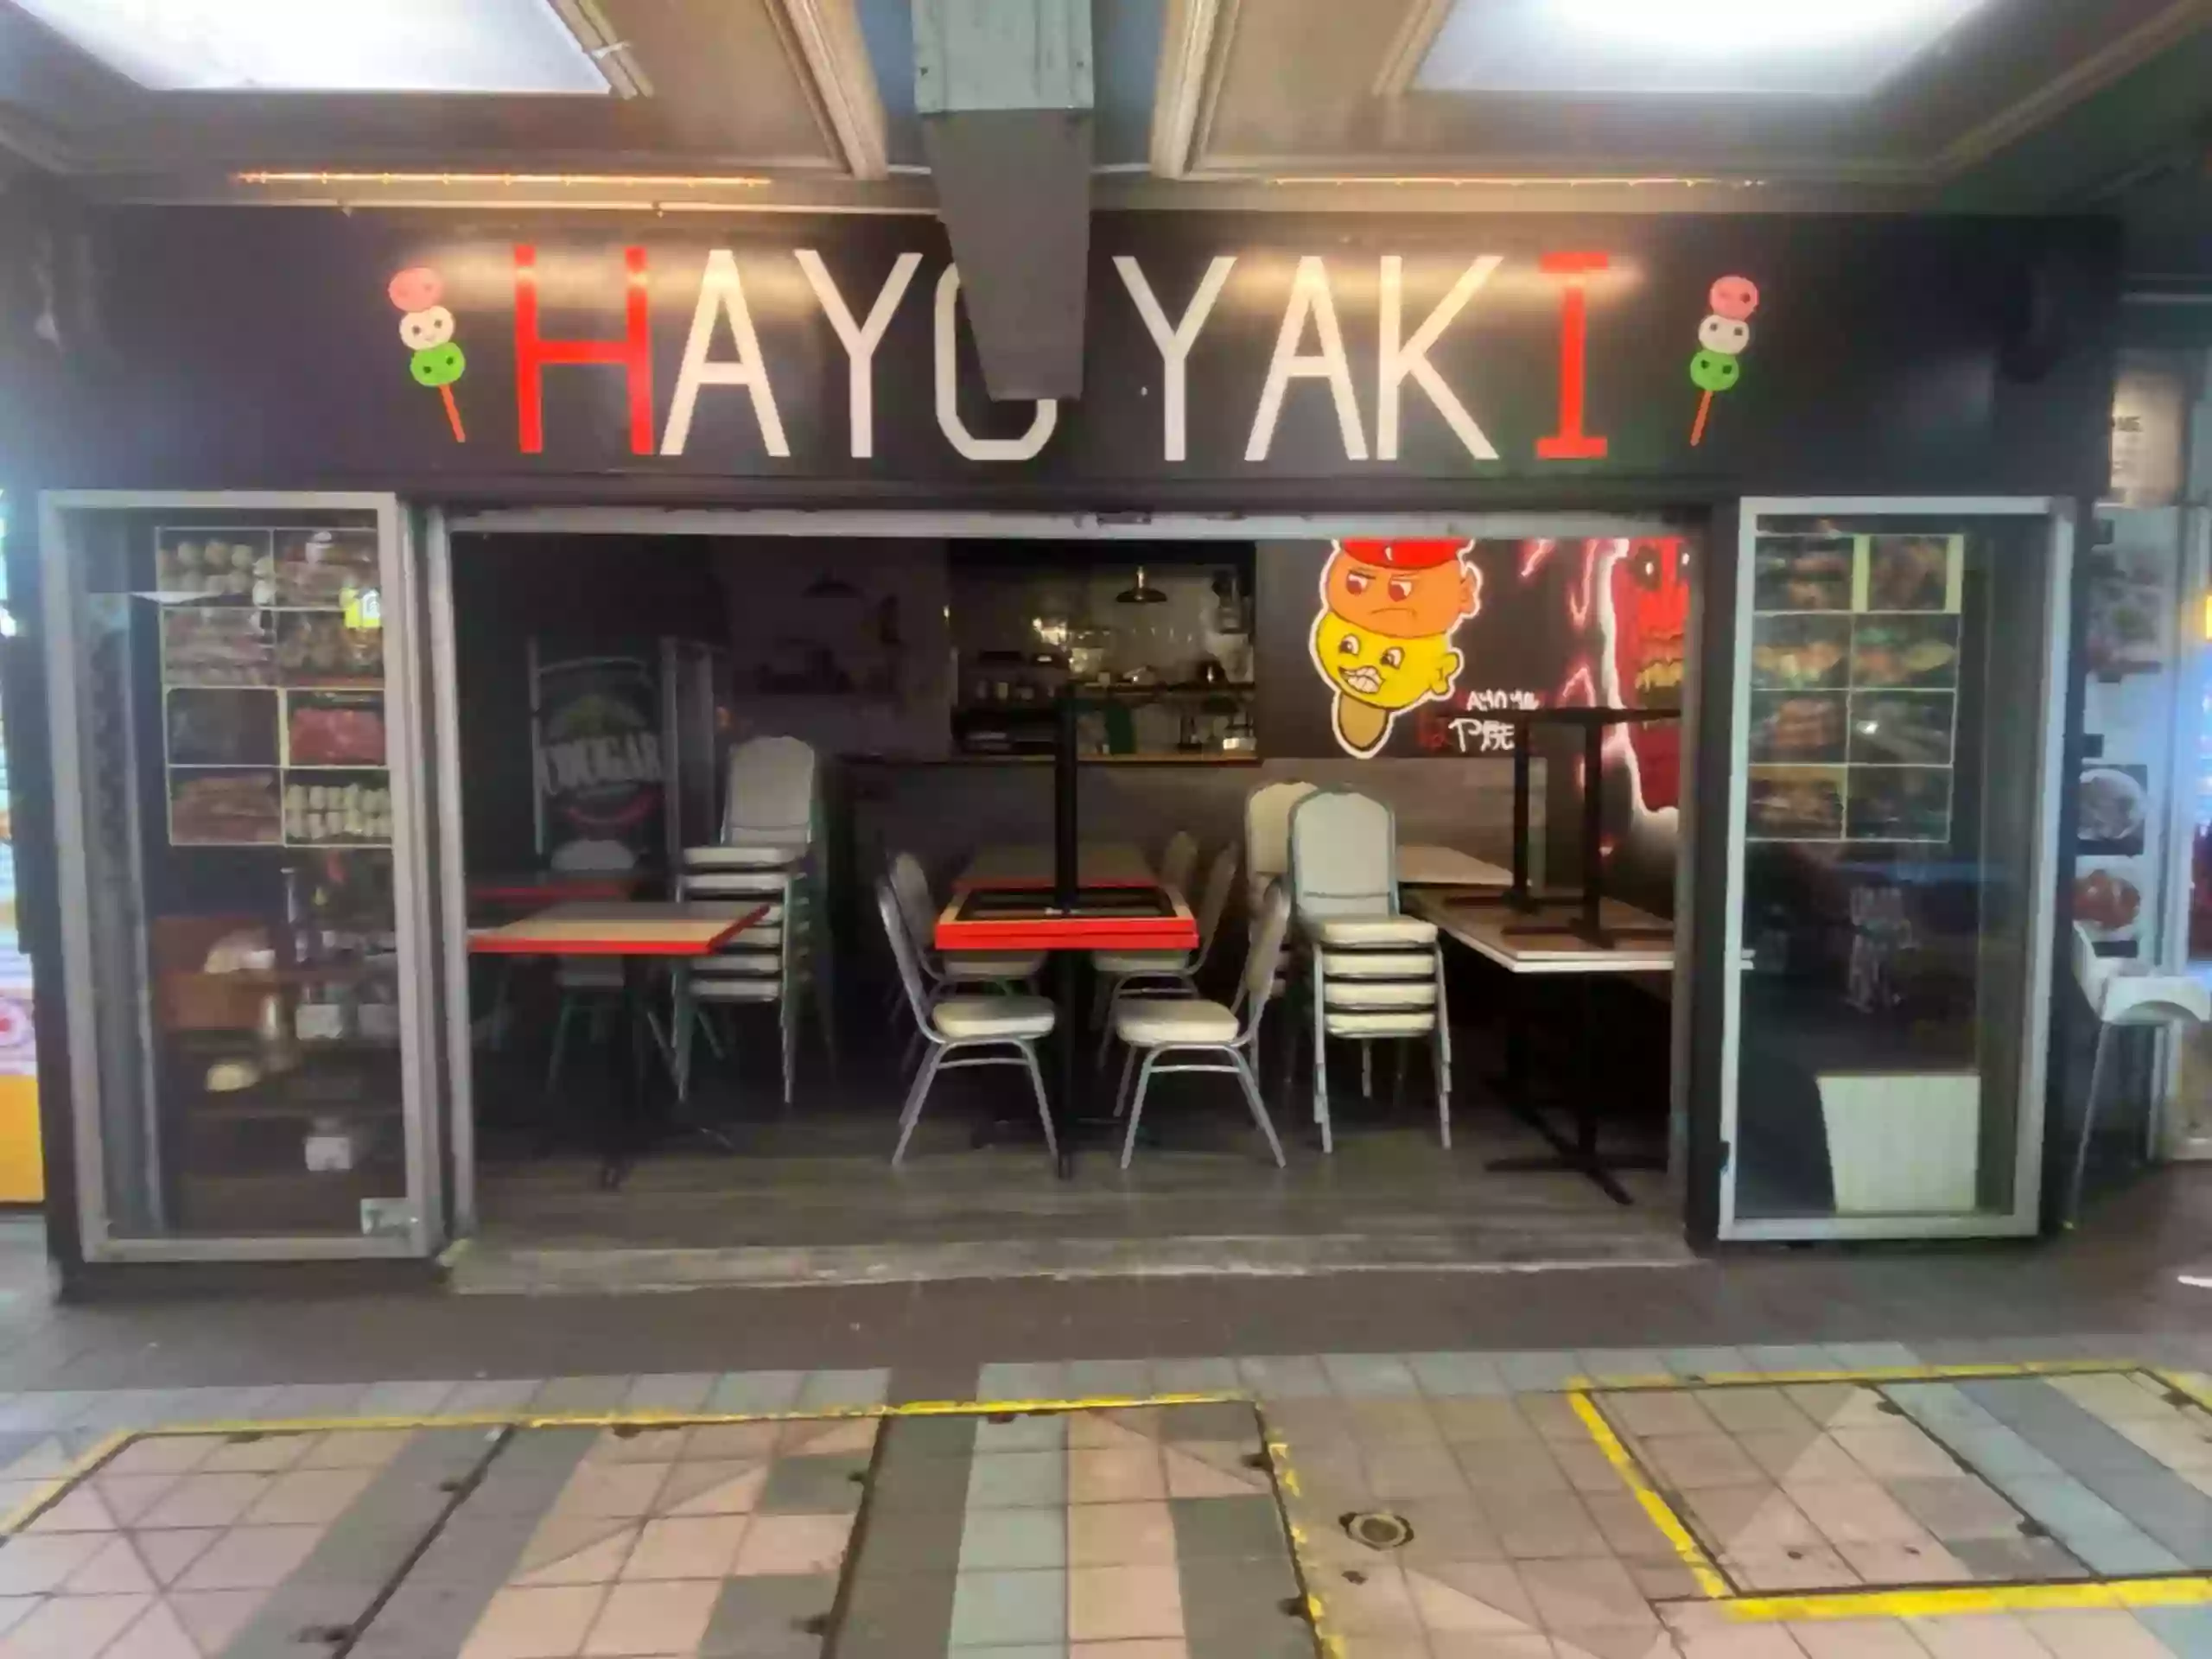 Hayoyaki